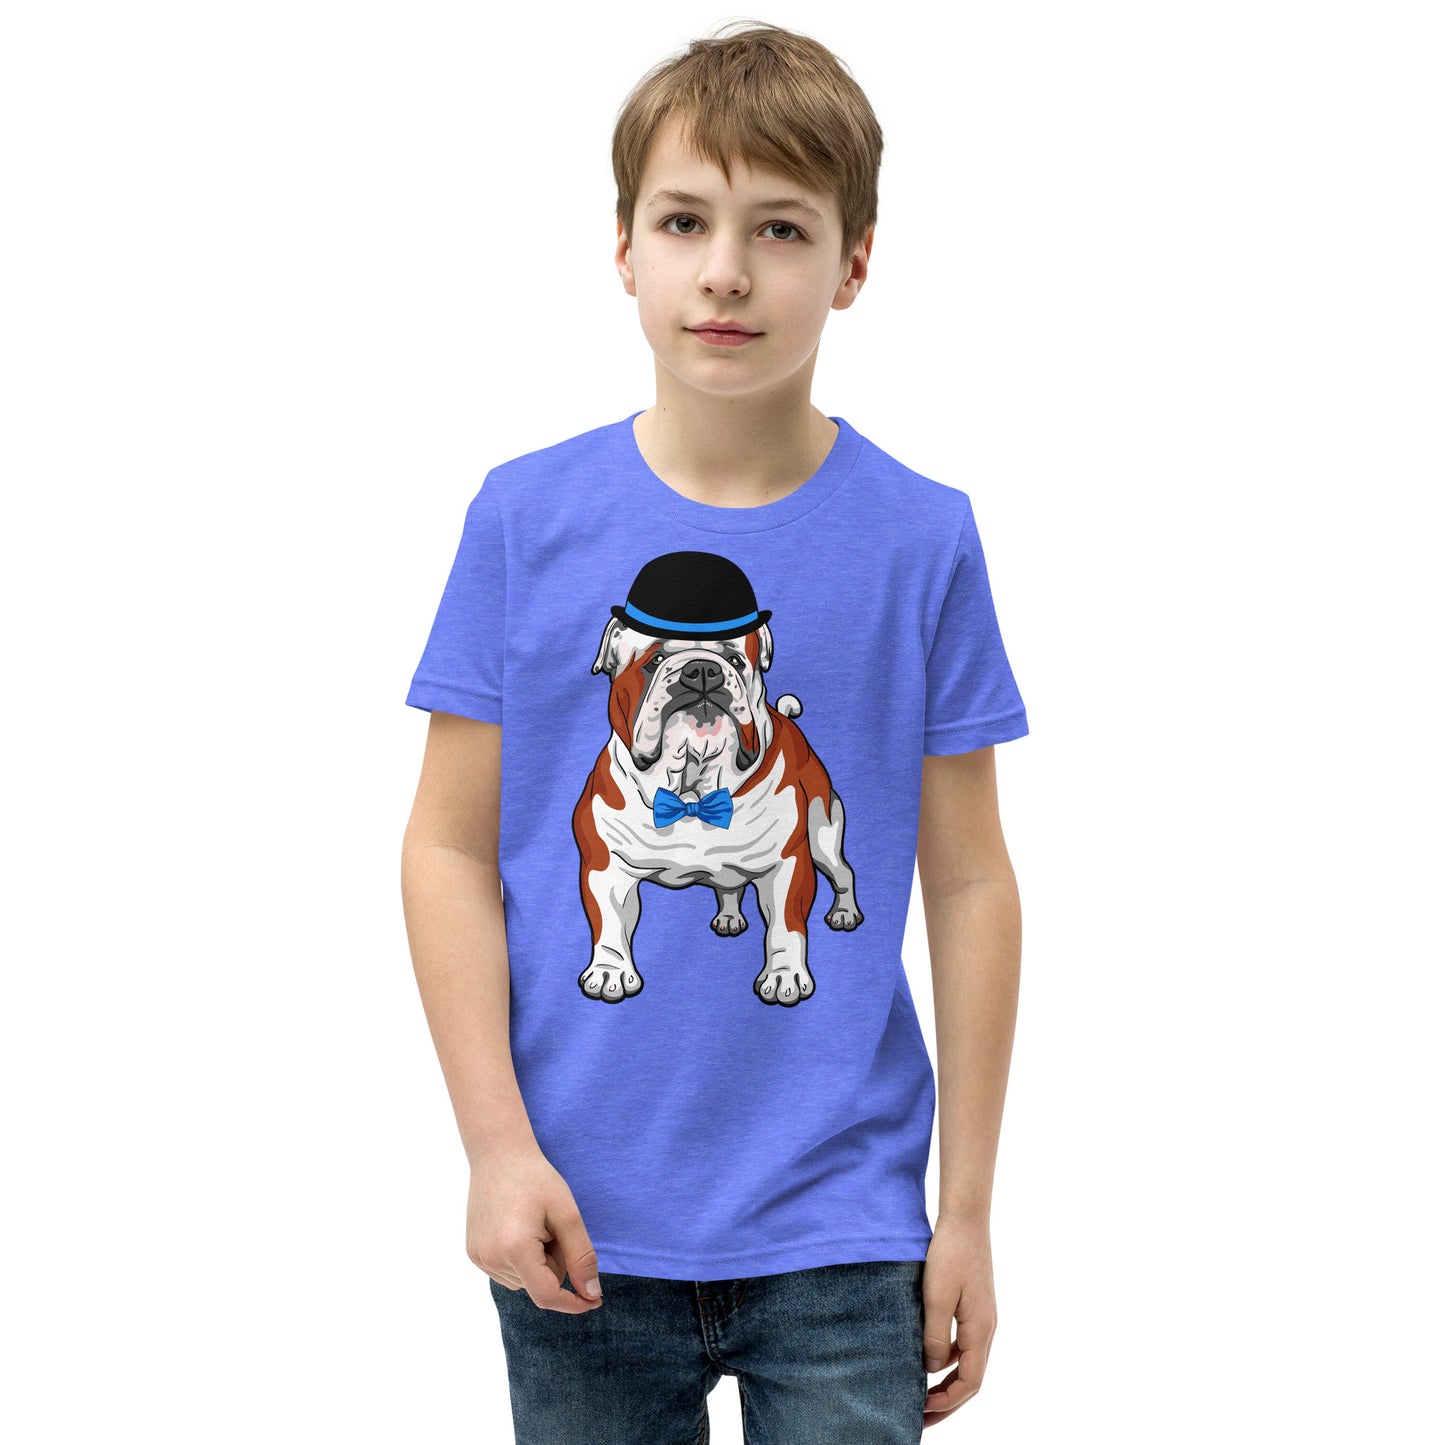 English Bulldog Dog T-shirt, No. 0244